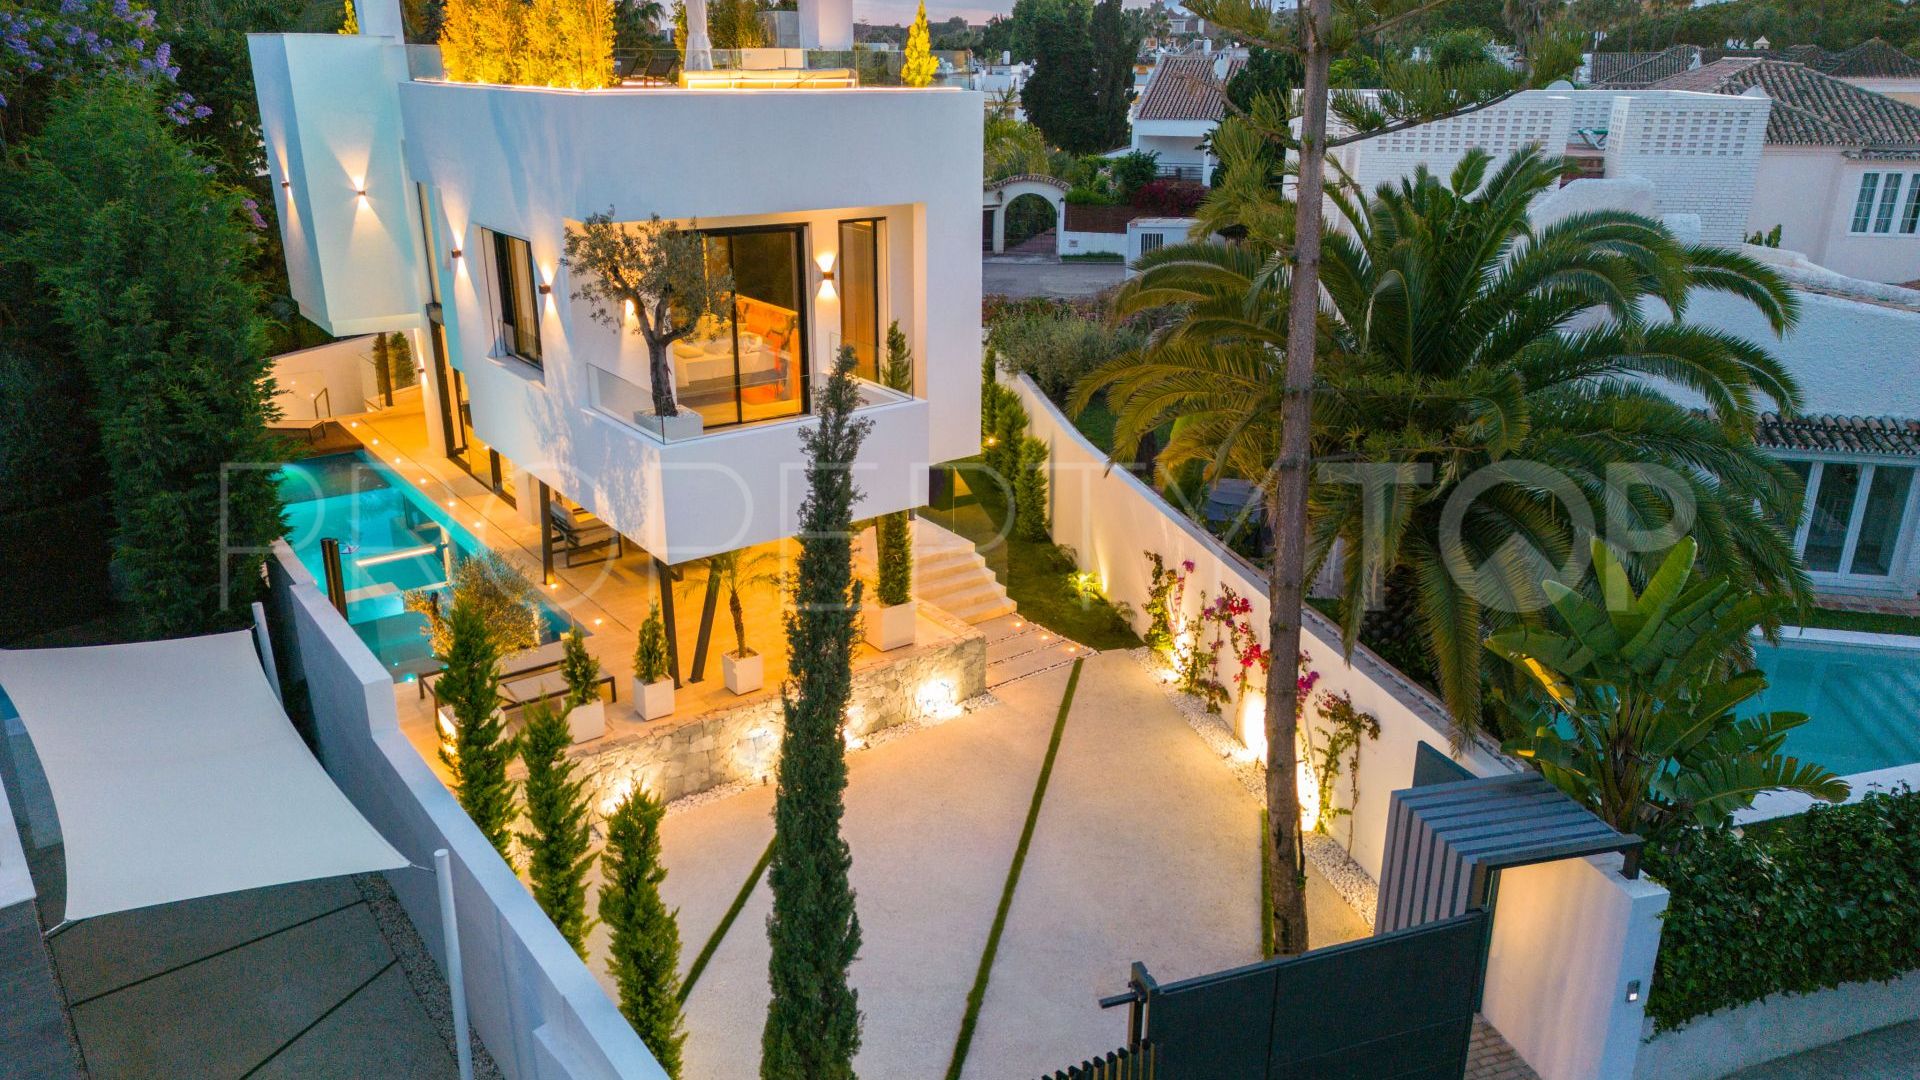 For sale villa in Casablanca with 5 bedrooms